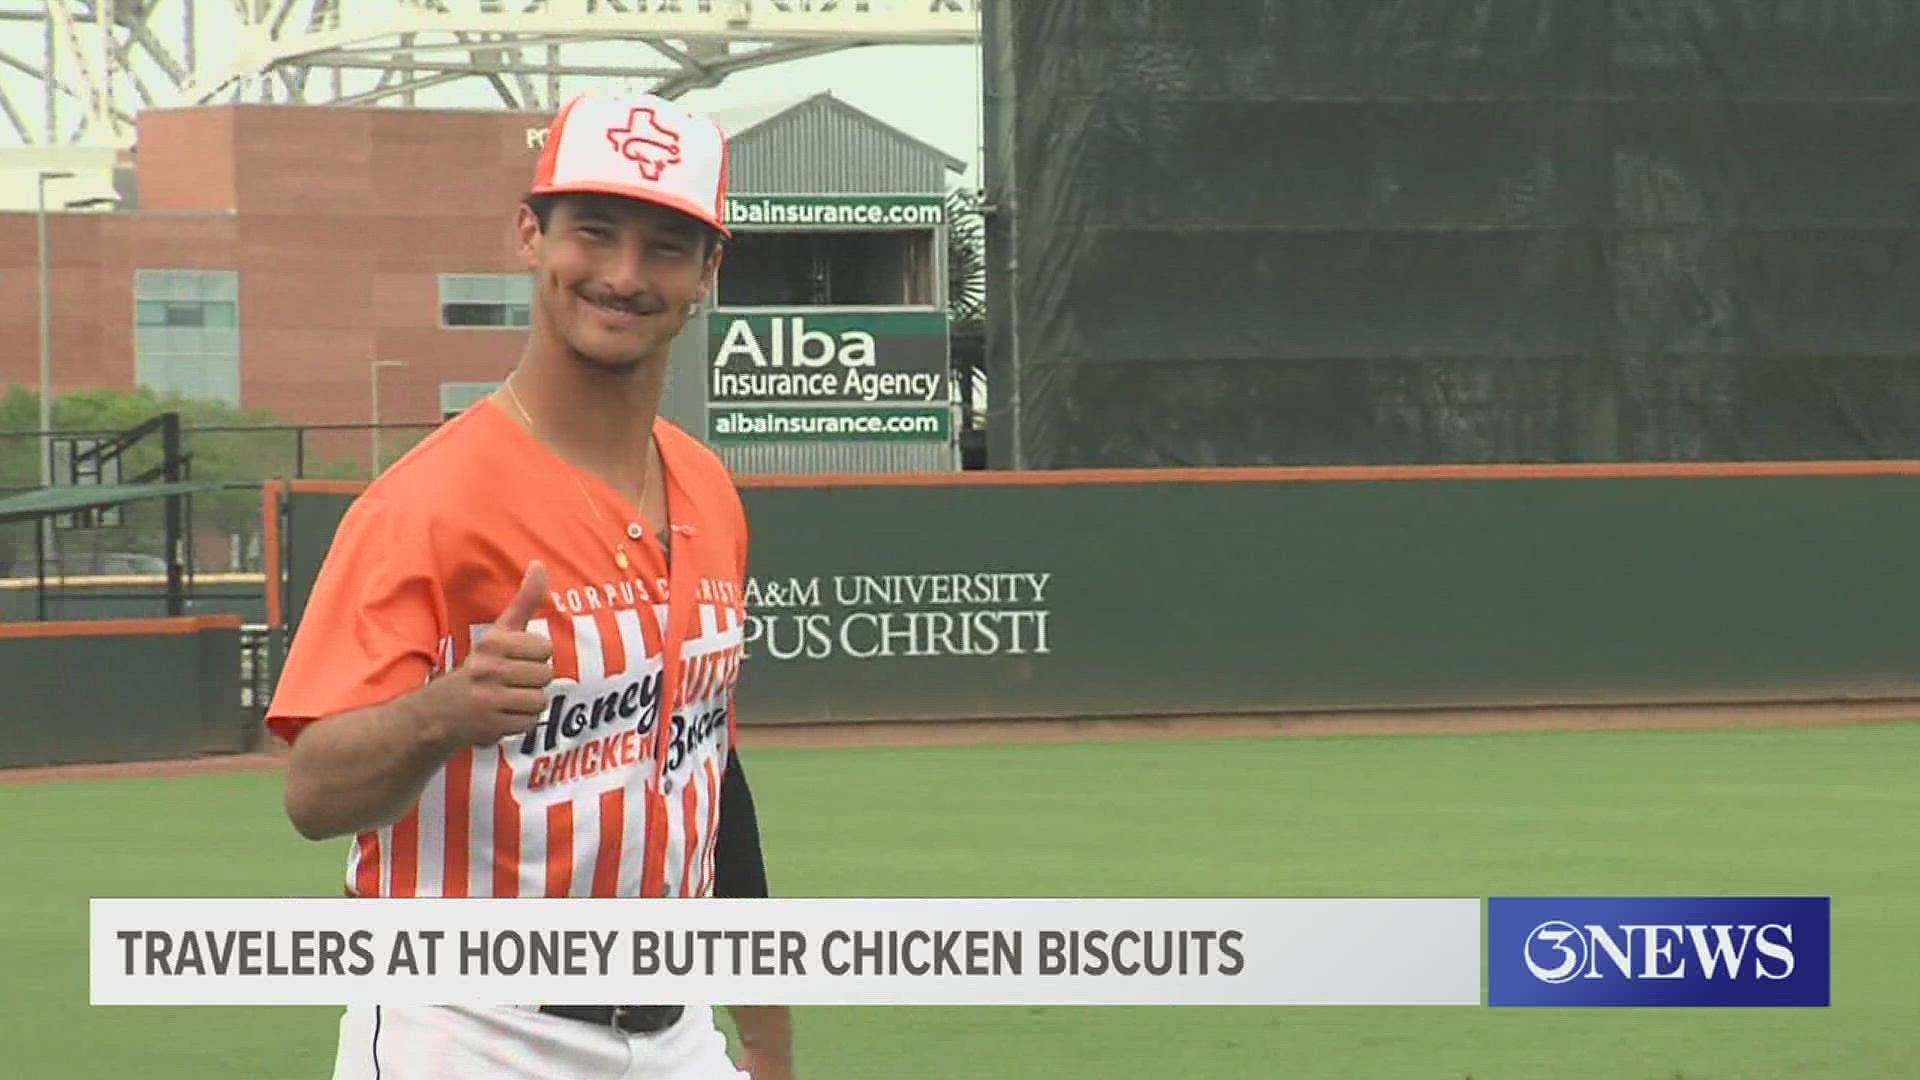 Honey Butter Chicken Biscuits get shutout of Arkansas